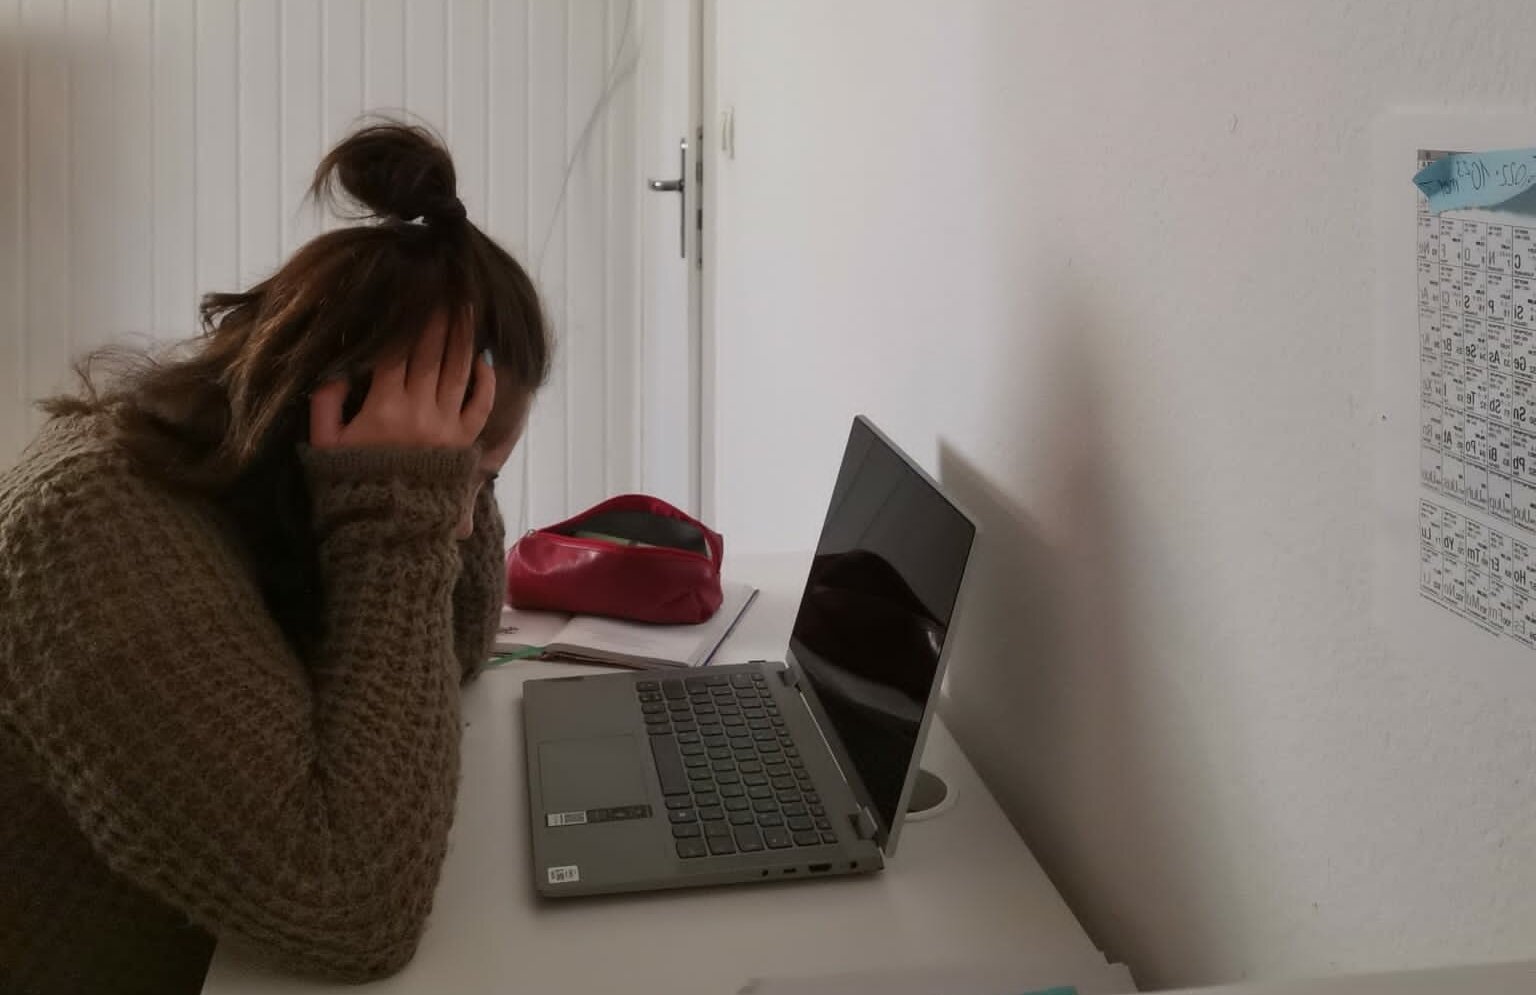 Man sieht eine frustrierte Studierende am Schreibtisch, die sich an den Kopf packt.